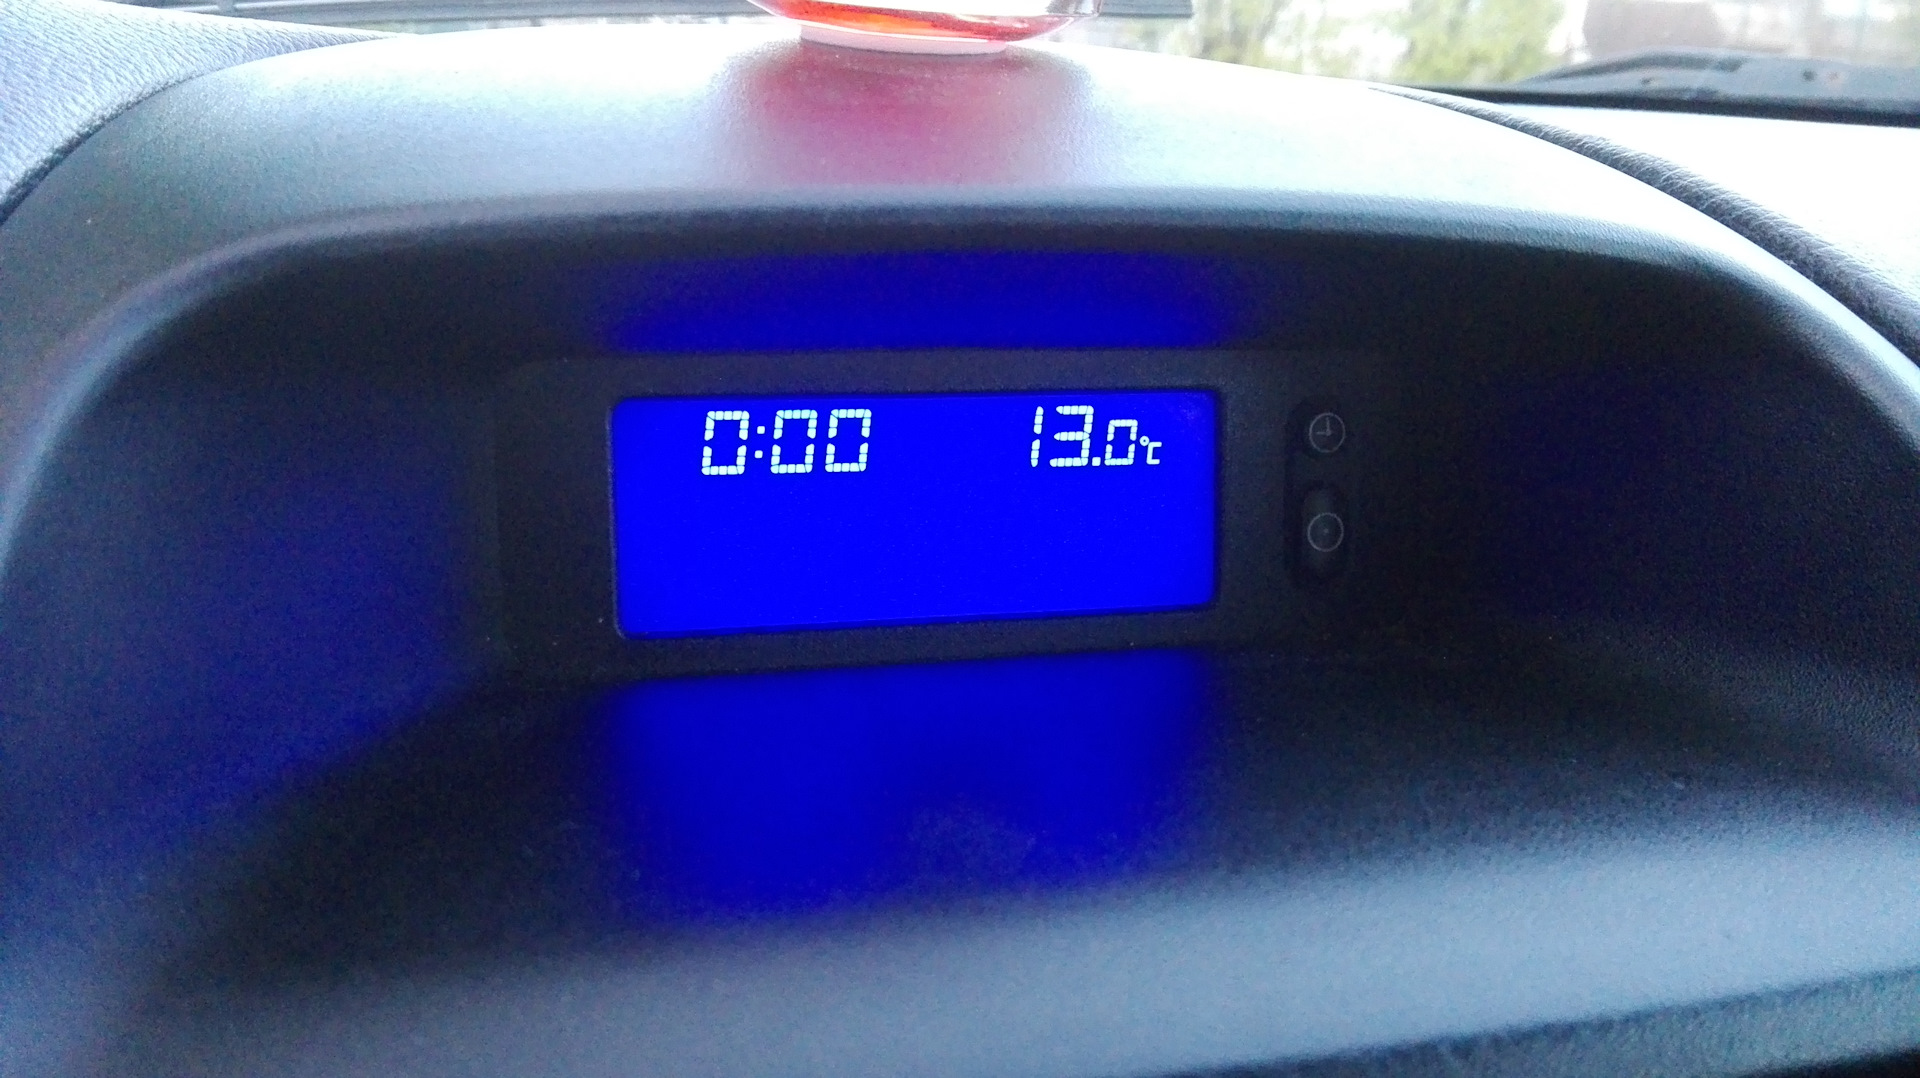 Установить часы на панель. Пересвет приборов на Astra g. Автомобили с часами на панели. A4184-010 панель часов. Как настроить часы на панель на автомобиле Форд 9тонн.